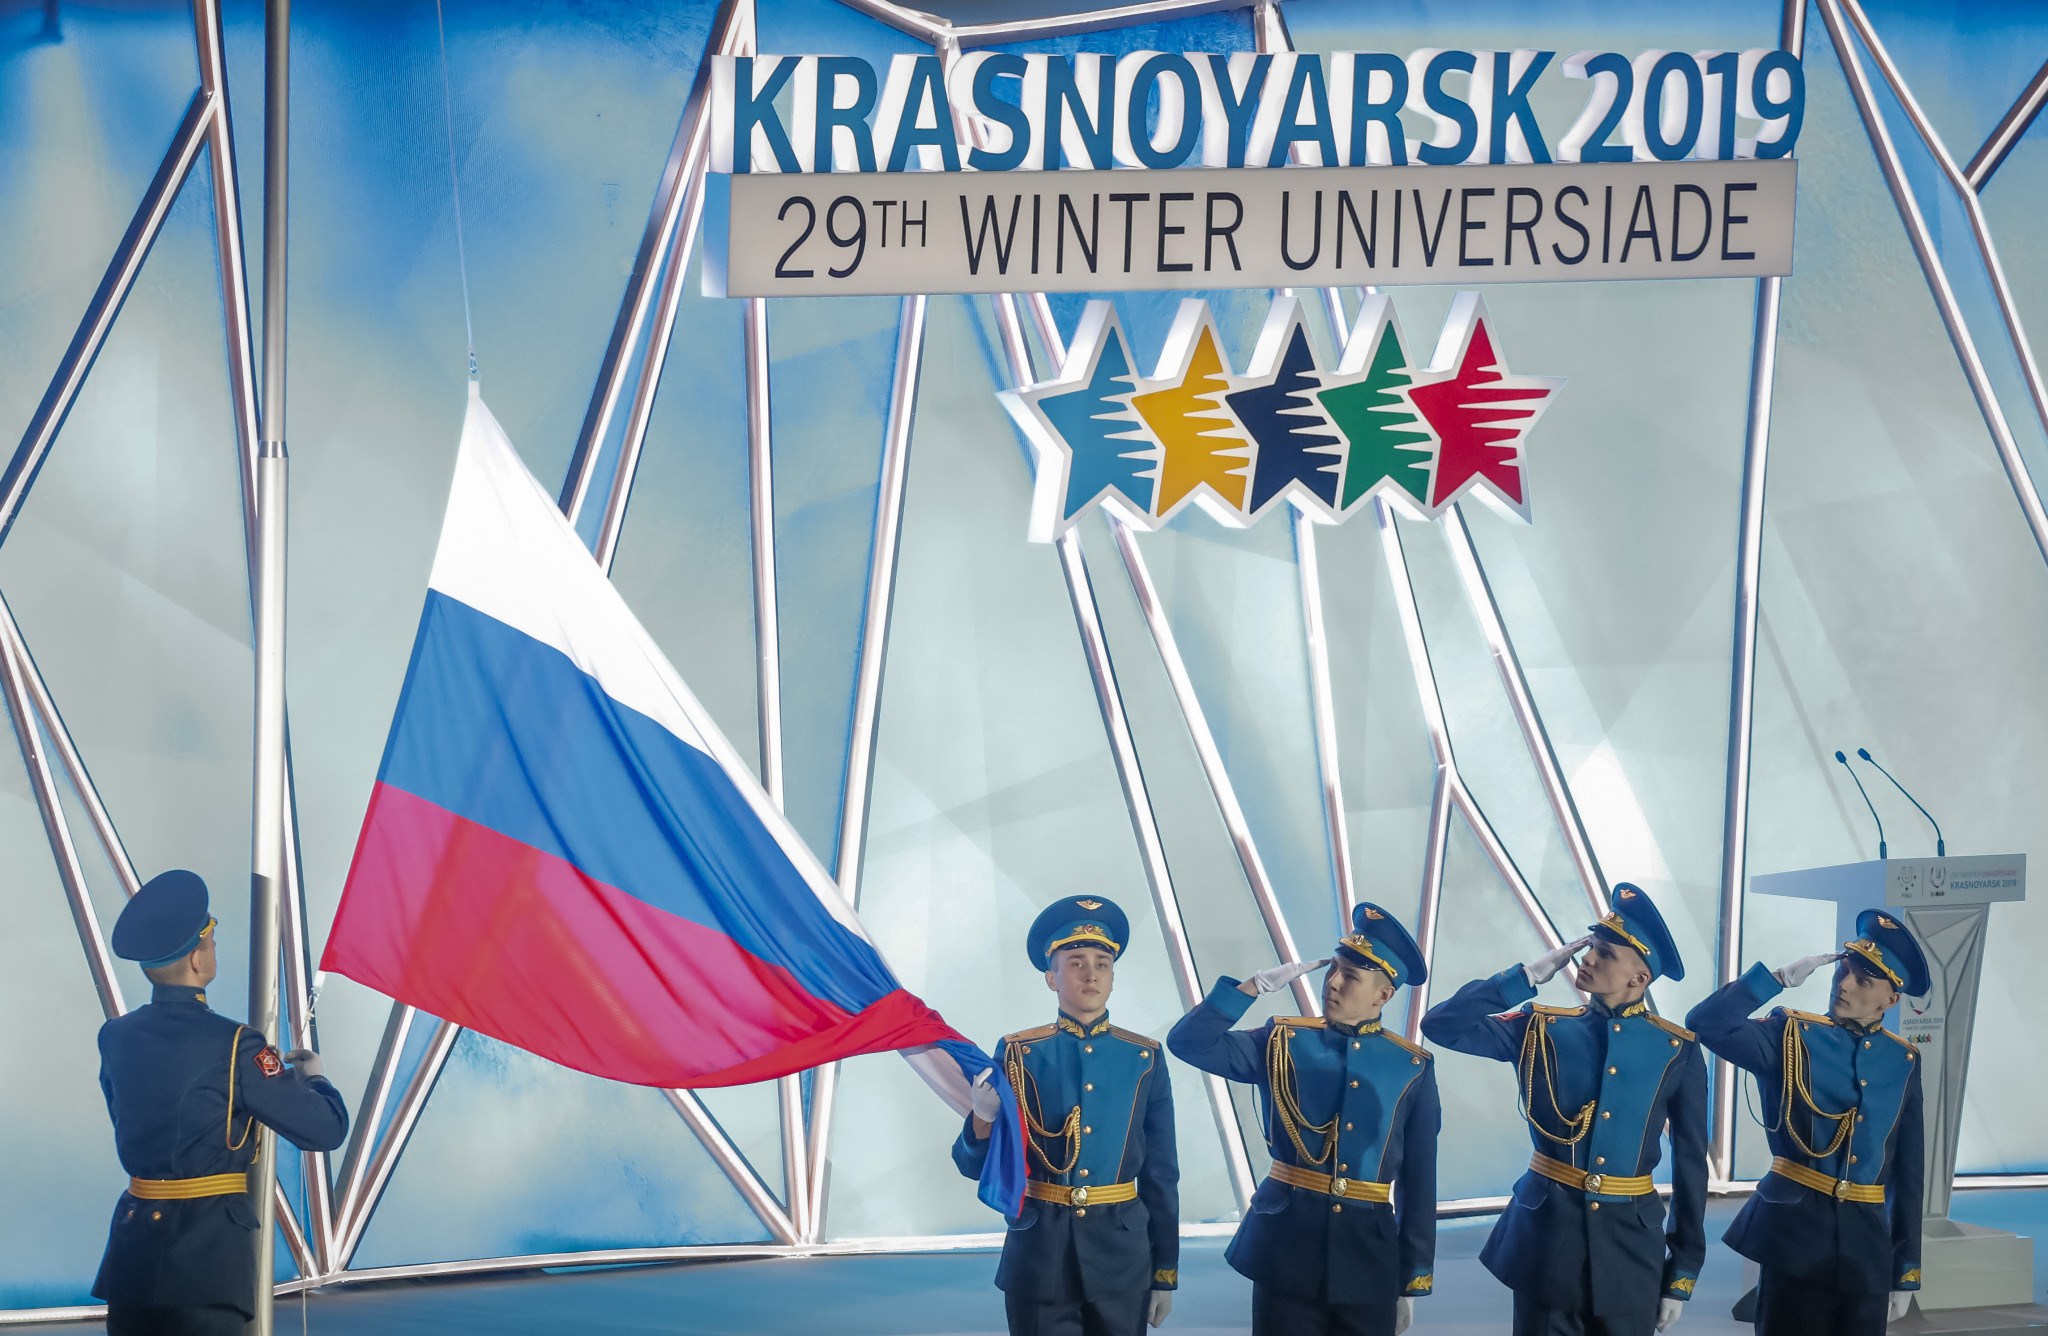 Siberian culture celebrated in Krasnoyarsk 2019 Opening Ceremony 